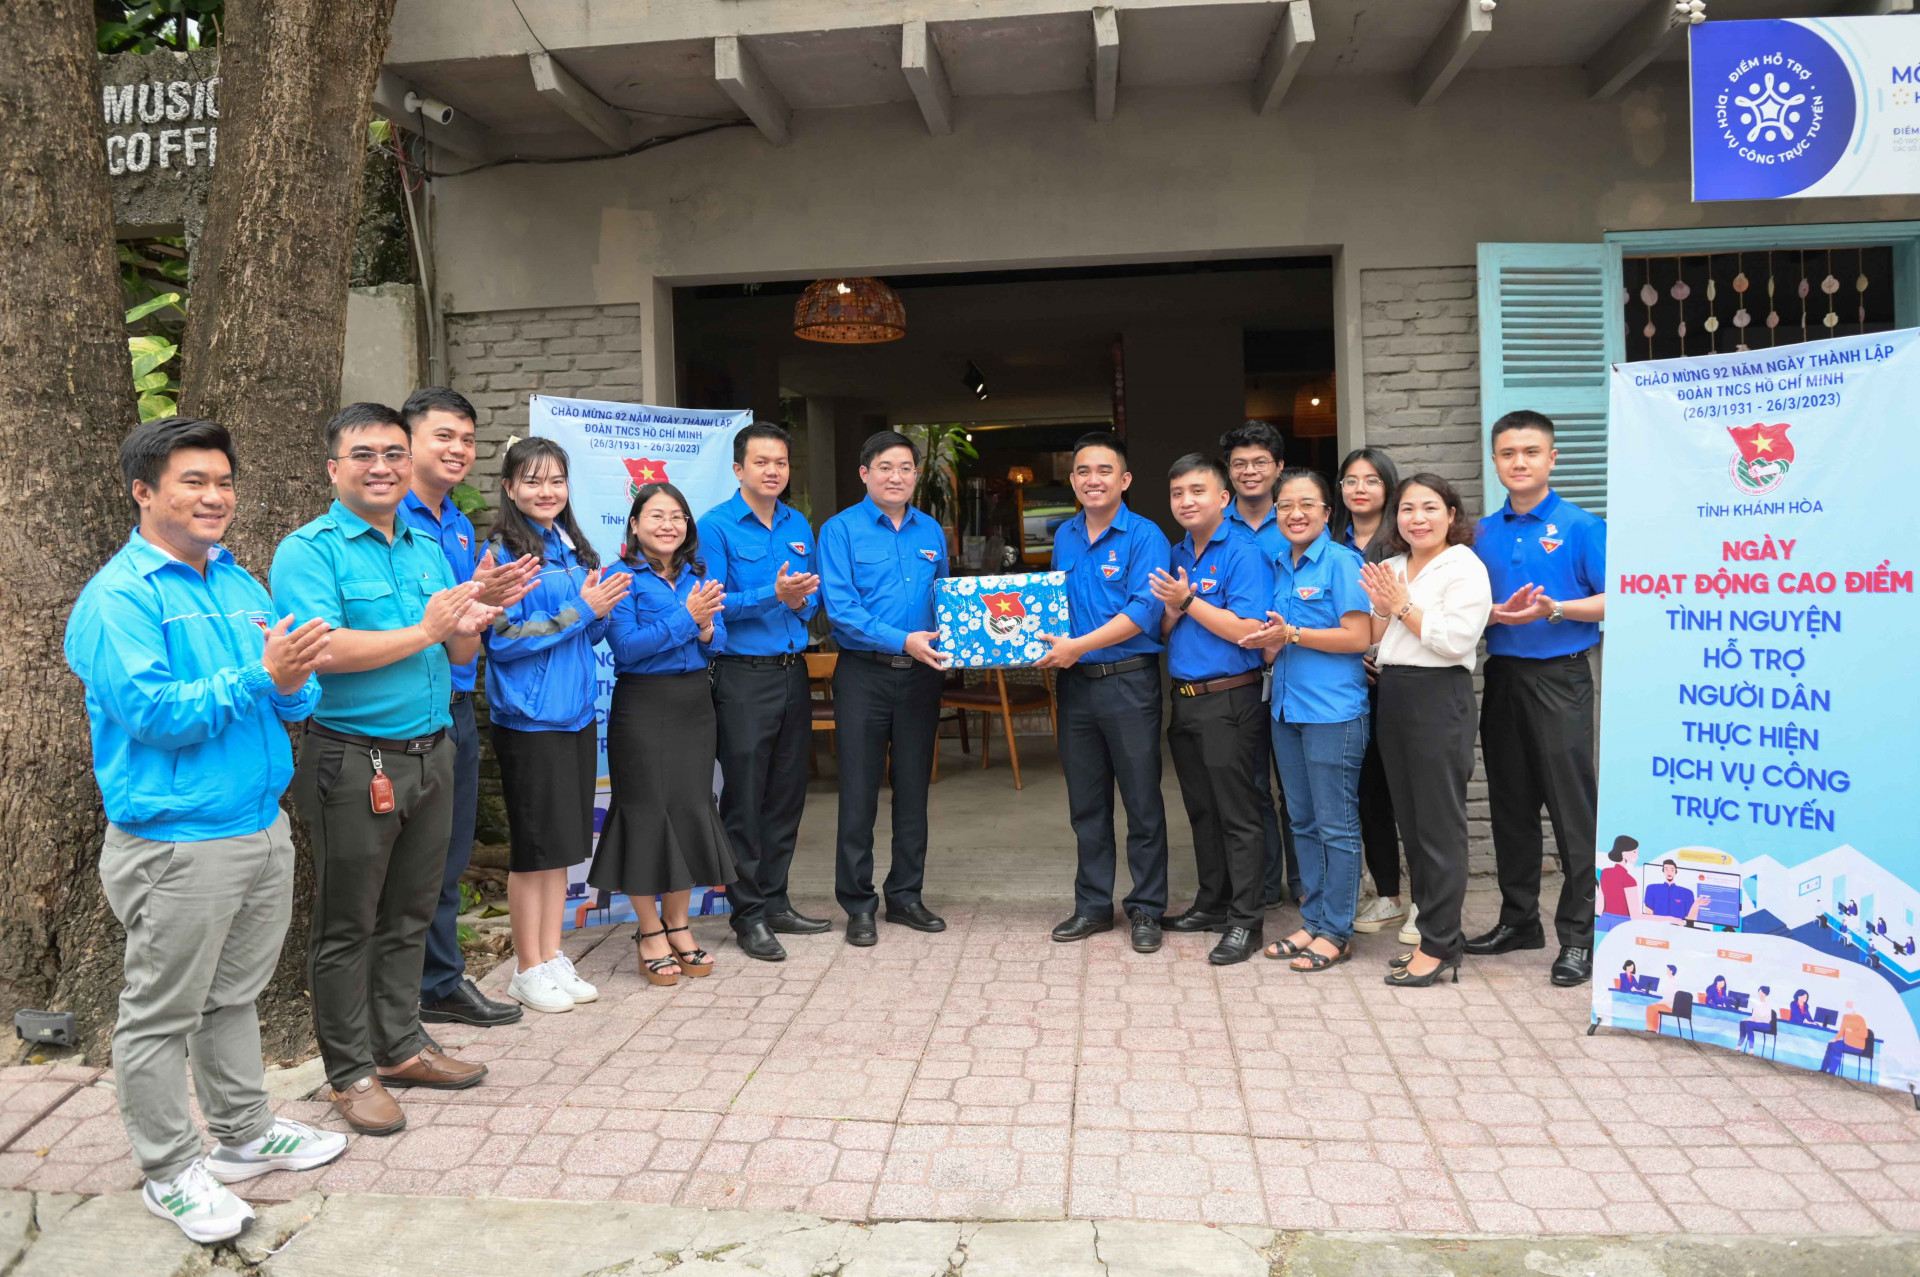 Sau lễ khởi công, các đại biểu đến thăm, tặng quà động viên các tình nguyện viên tại điểm tình nguyện triển khai “Ngày hoạt động cao điểm tình nguyện hỗ trợ người dân thực hiện dịch vụ công trực tuyến toàn tỉnh” ở đường Đống Đa, TP. Nha Trang